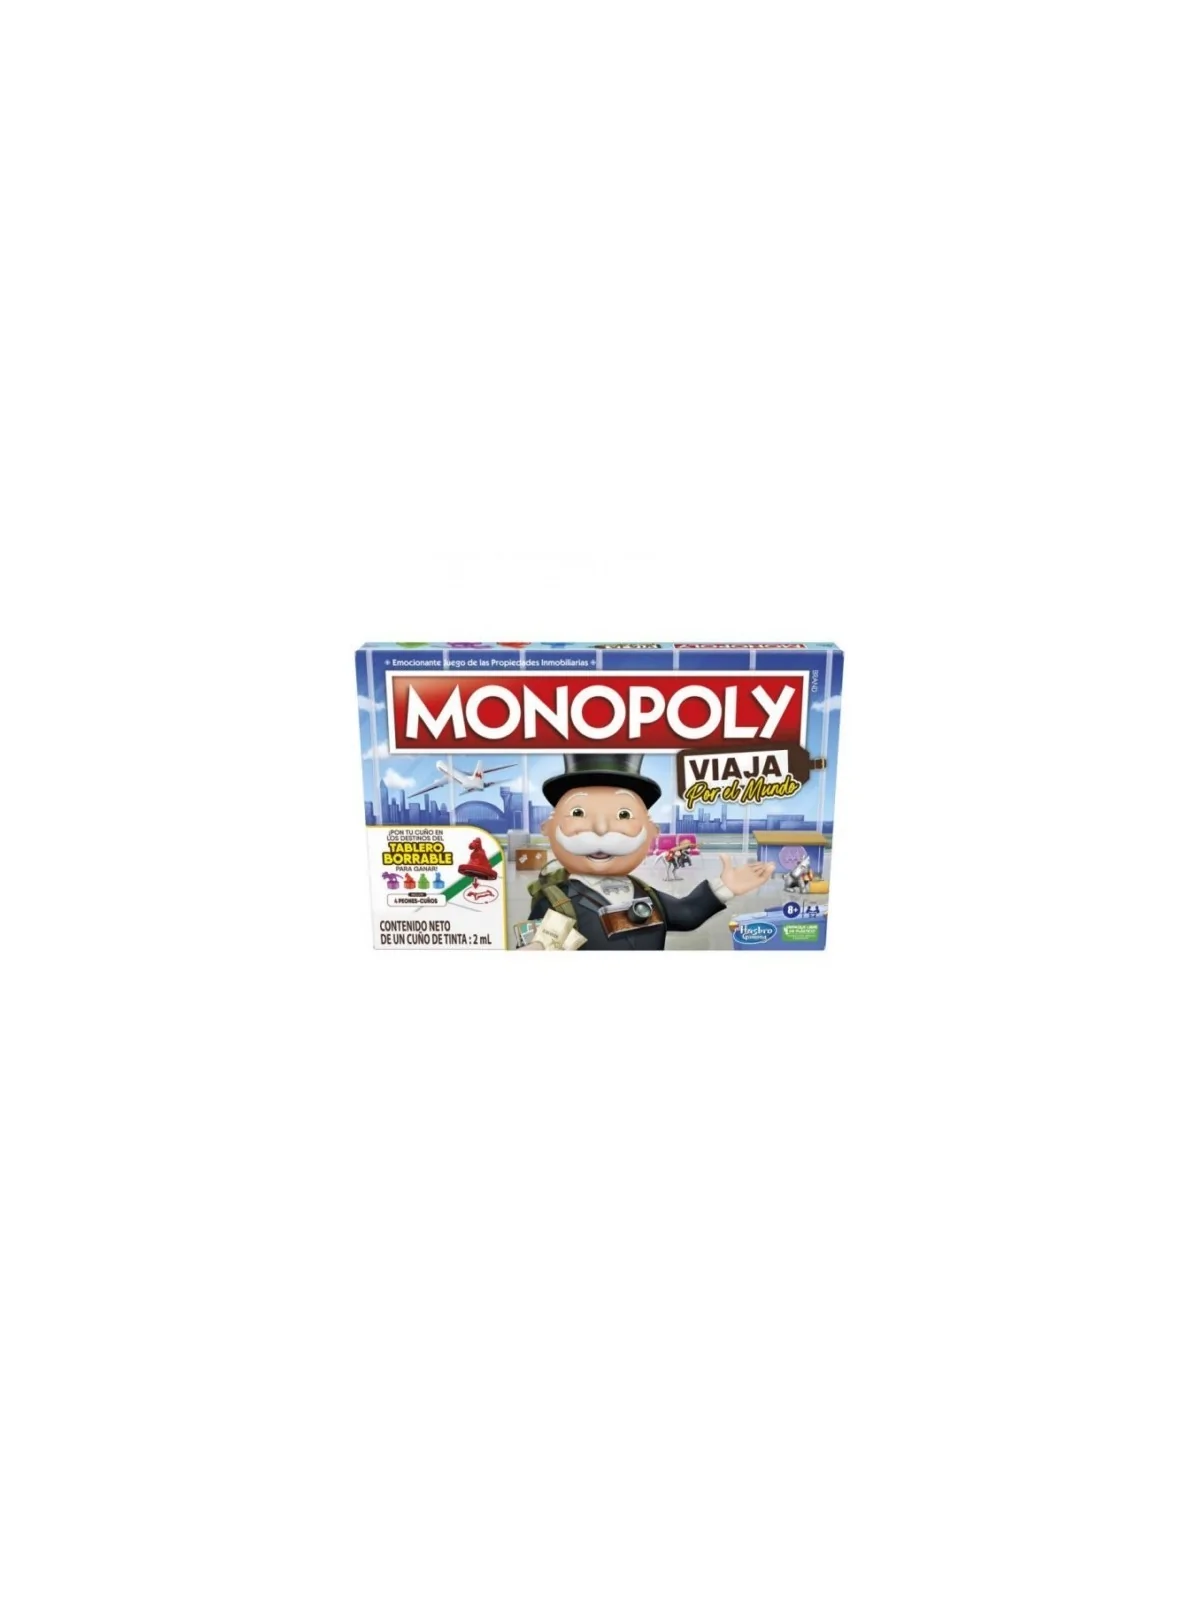 Comprar Monopoly Viaja por el Mundo barato al mejor precio 25,19 € de 